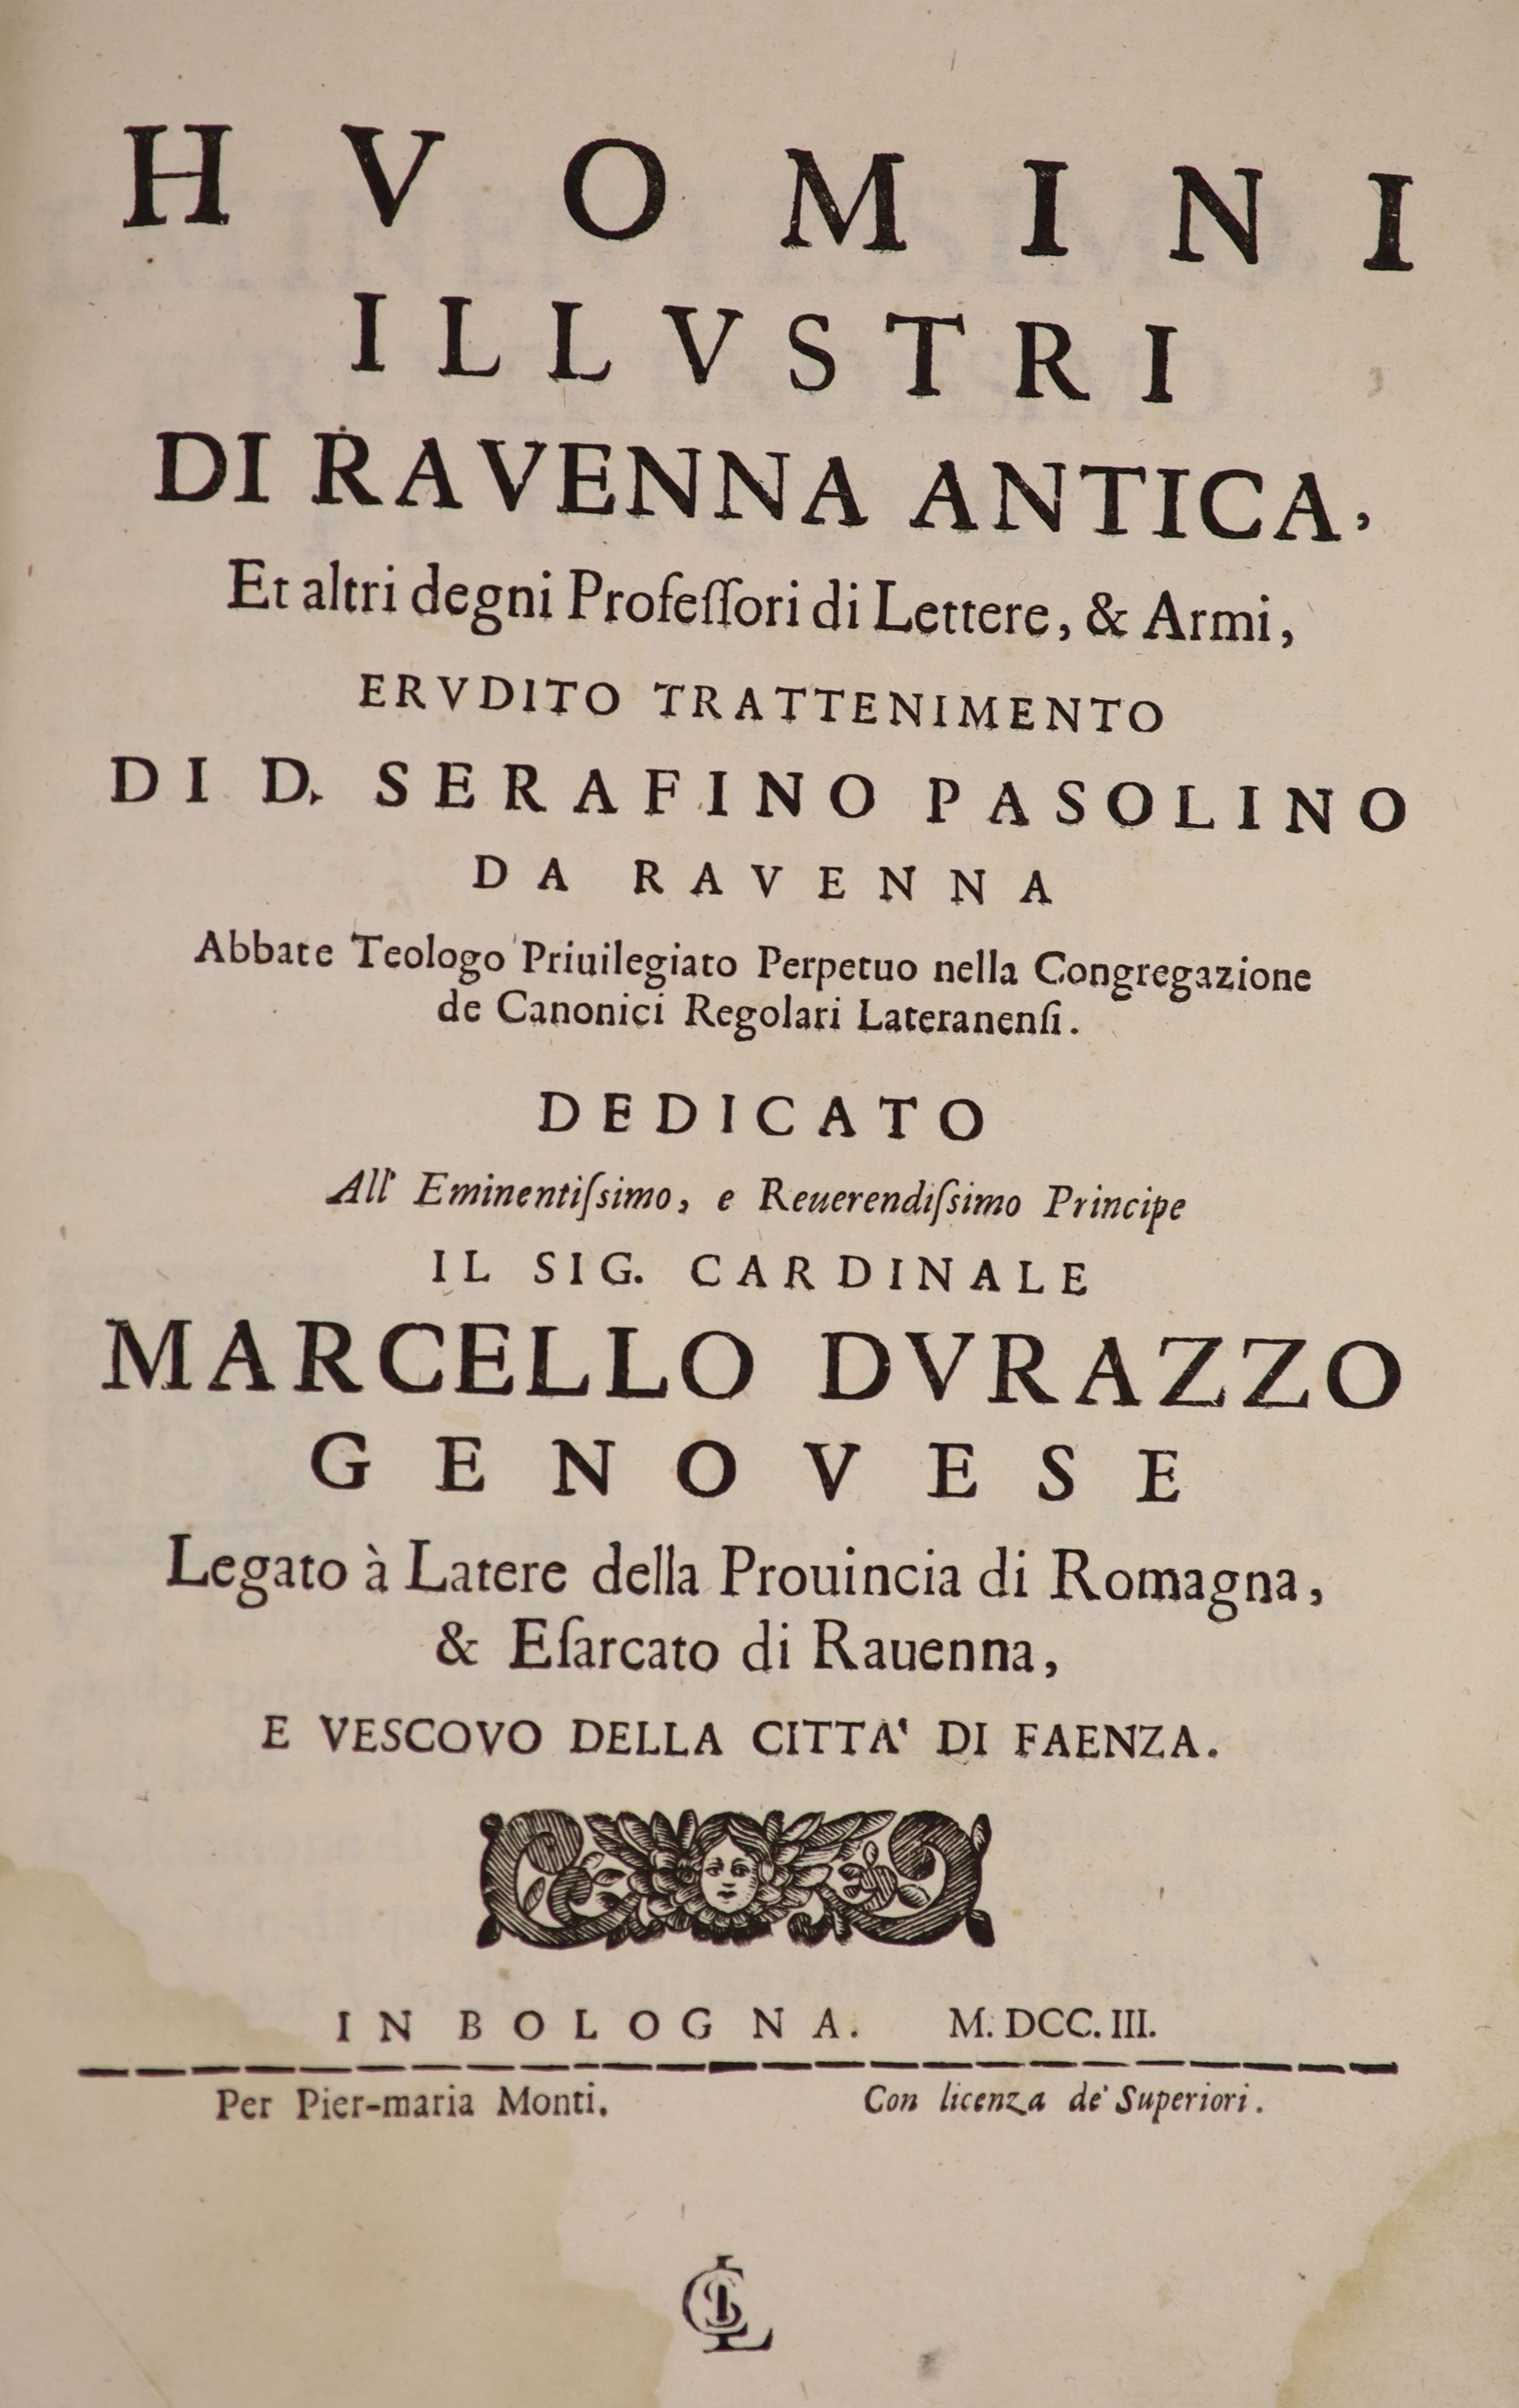 Pasolini, J.B. Huomini Illustri di Ravenna Antica…